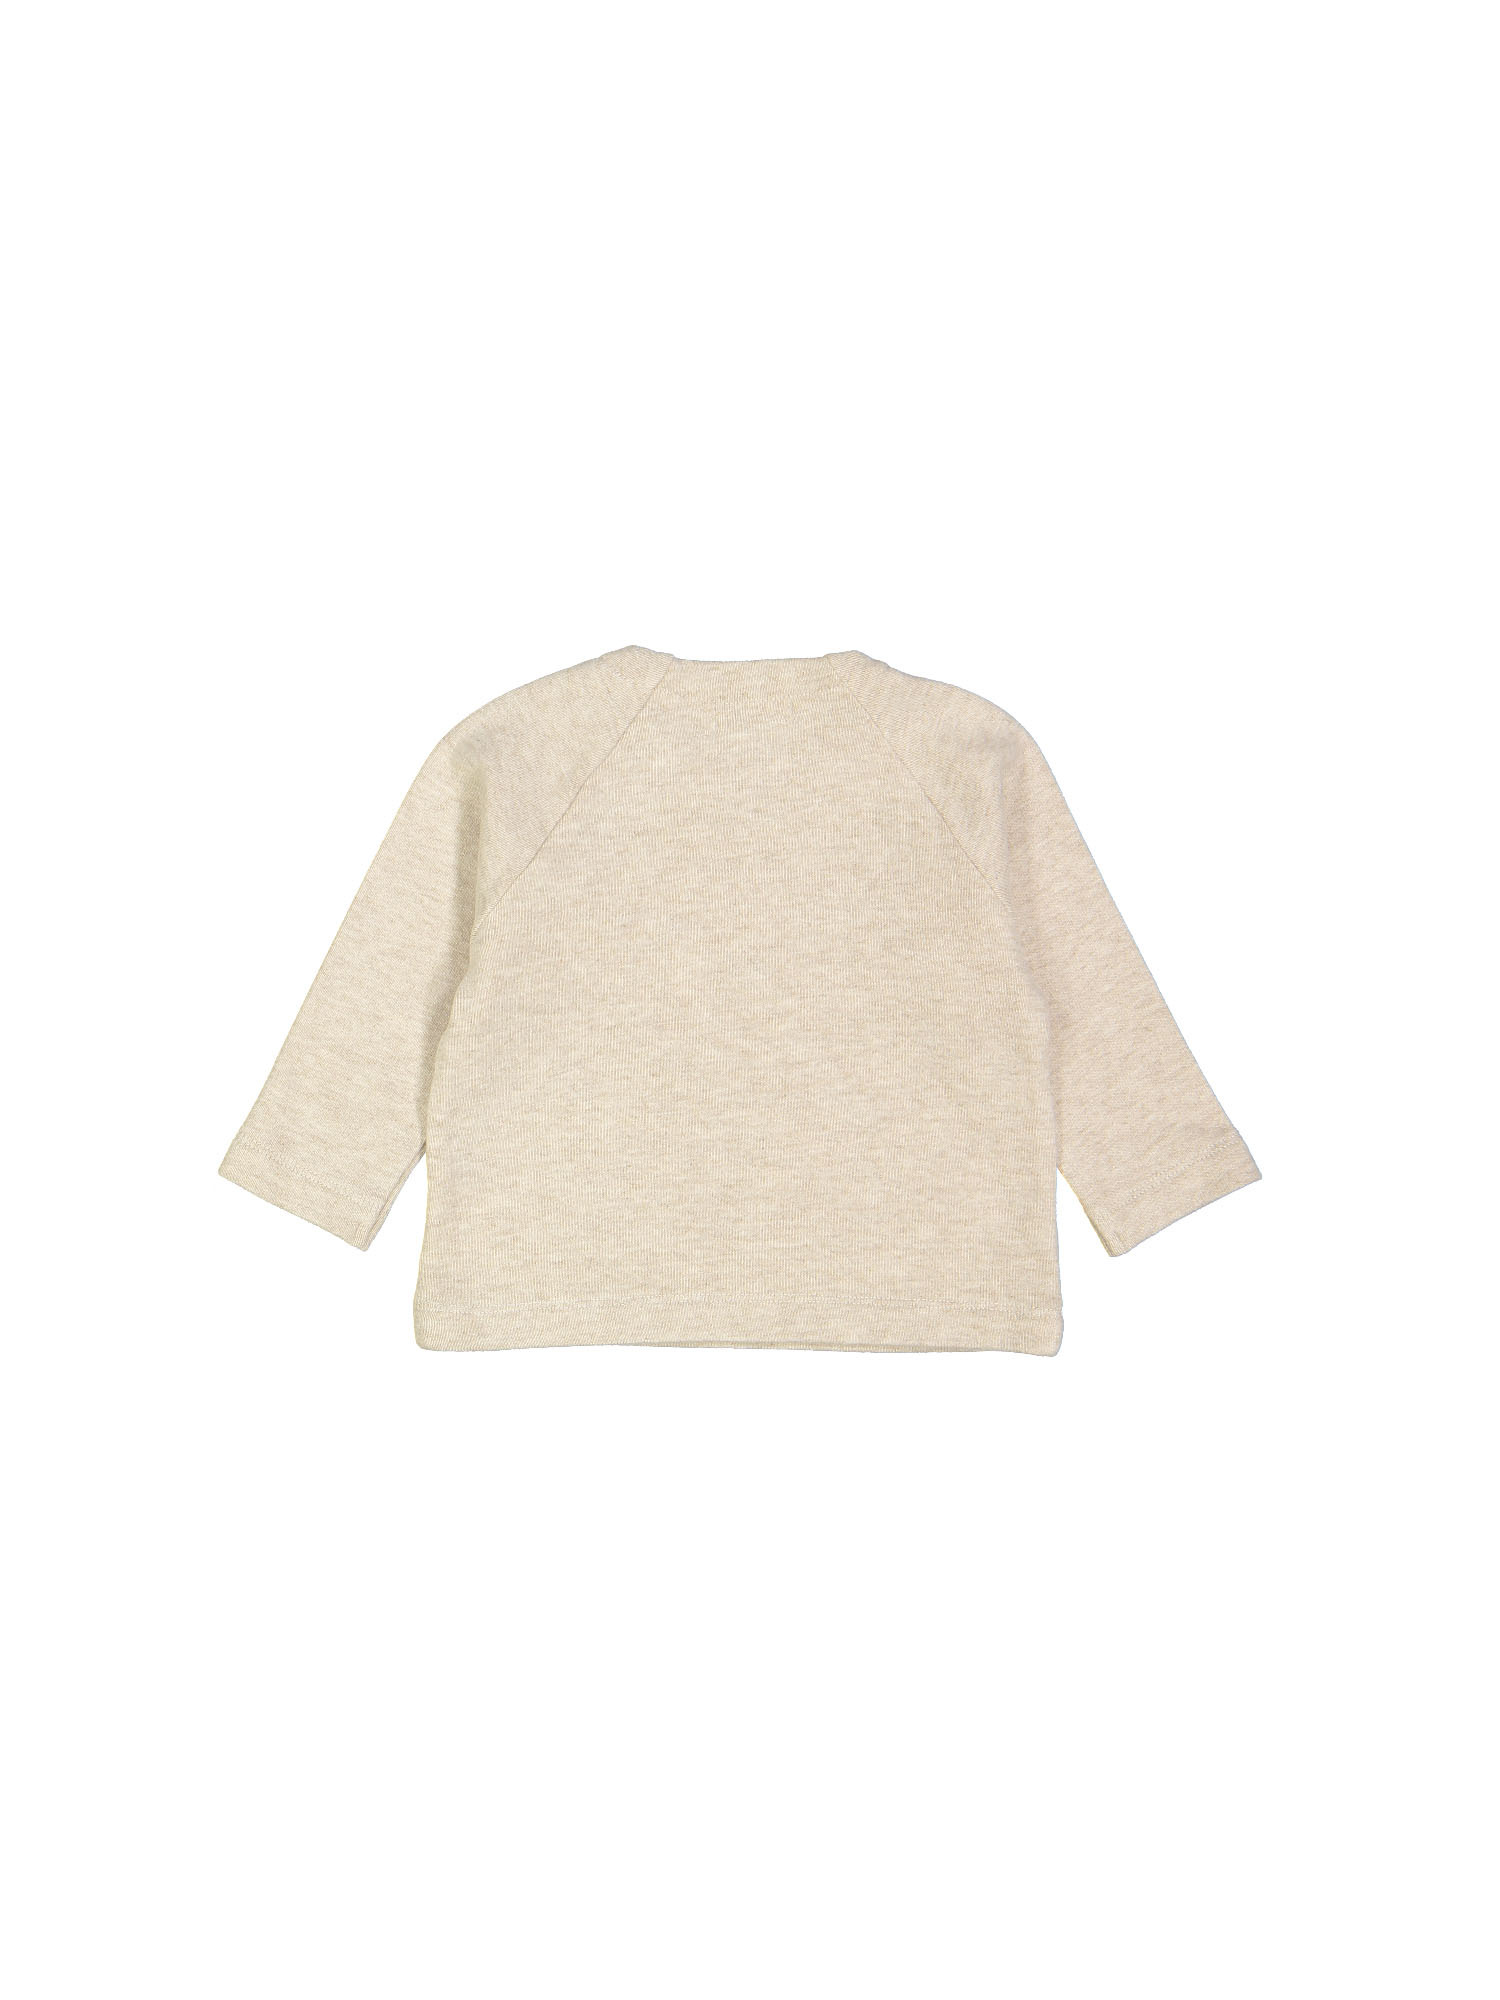 sweater baby soft beige 06m